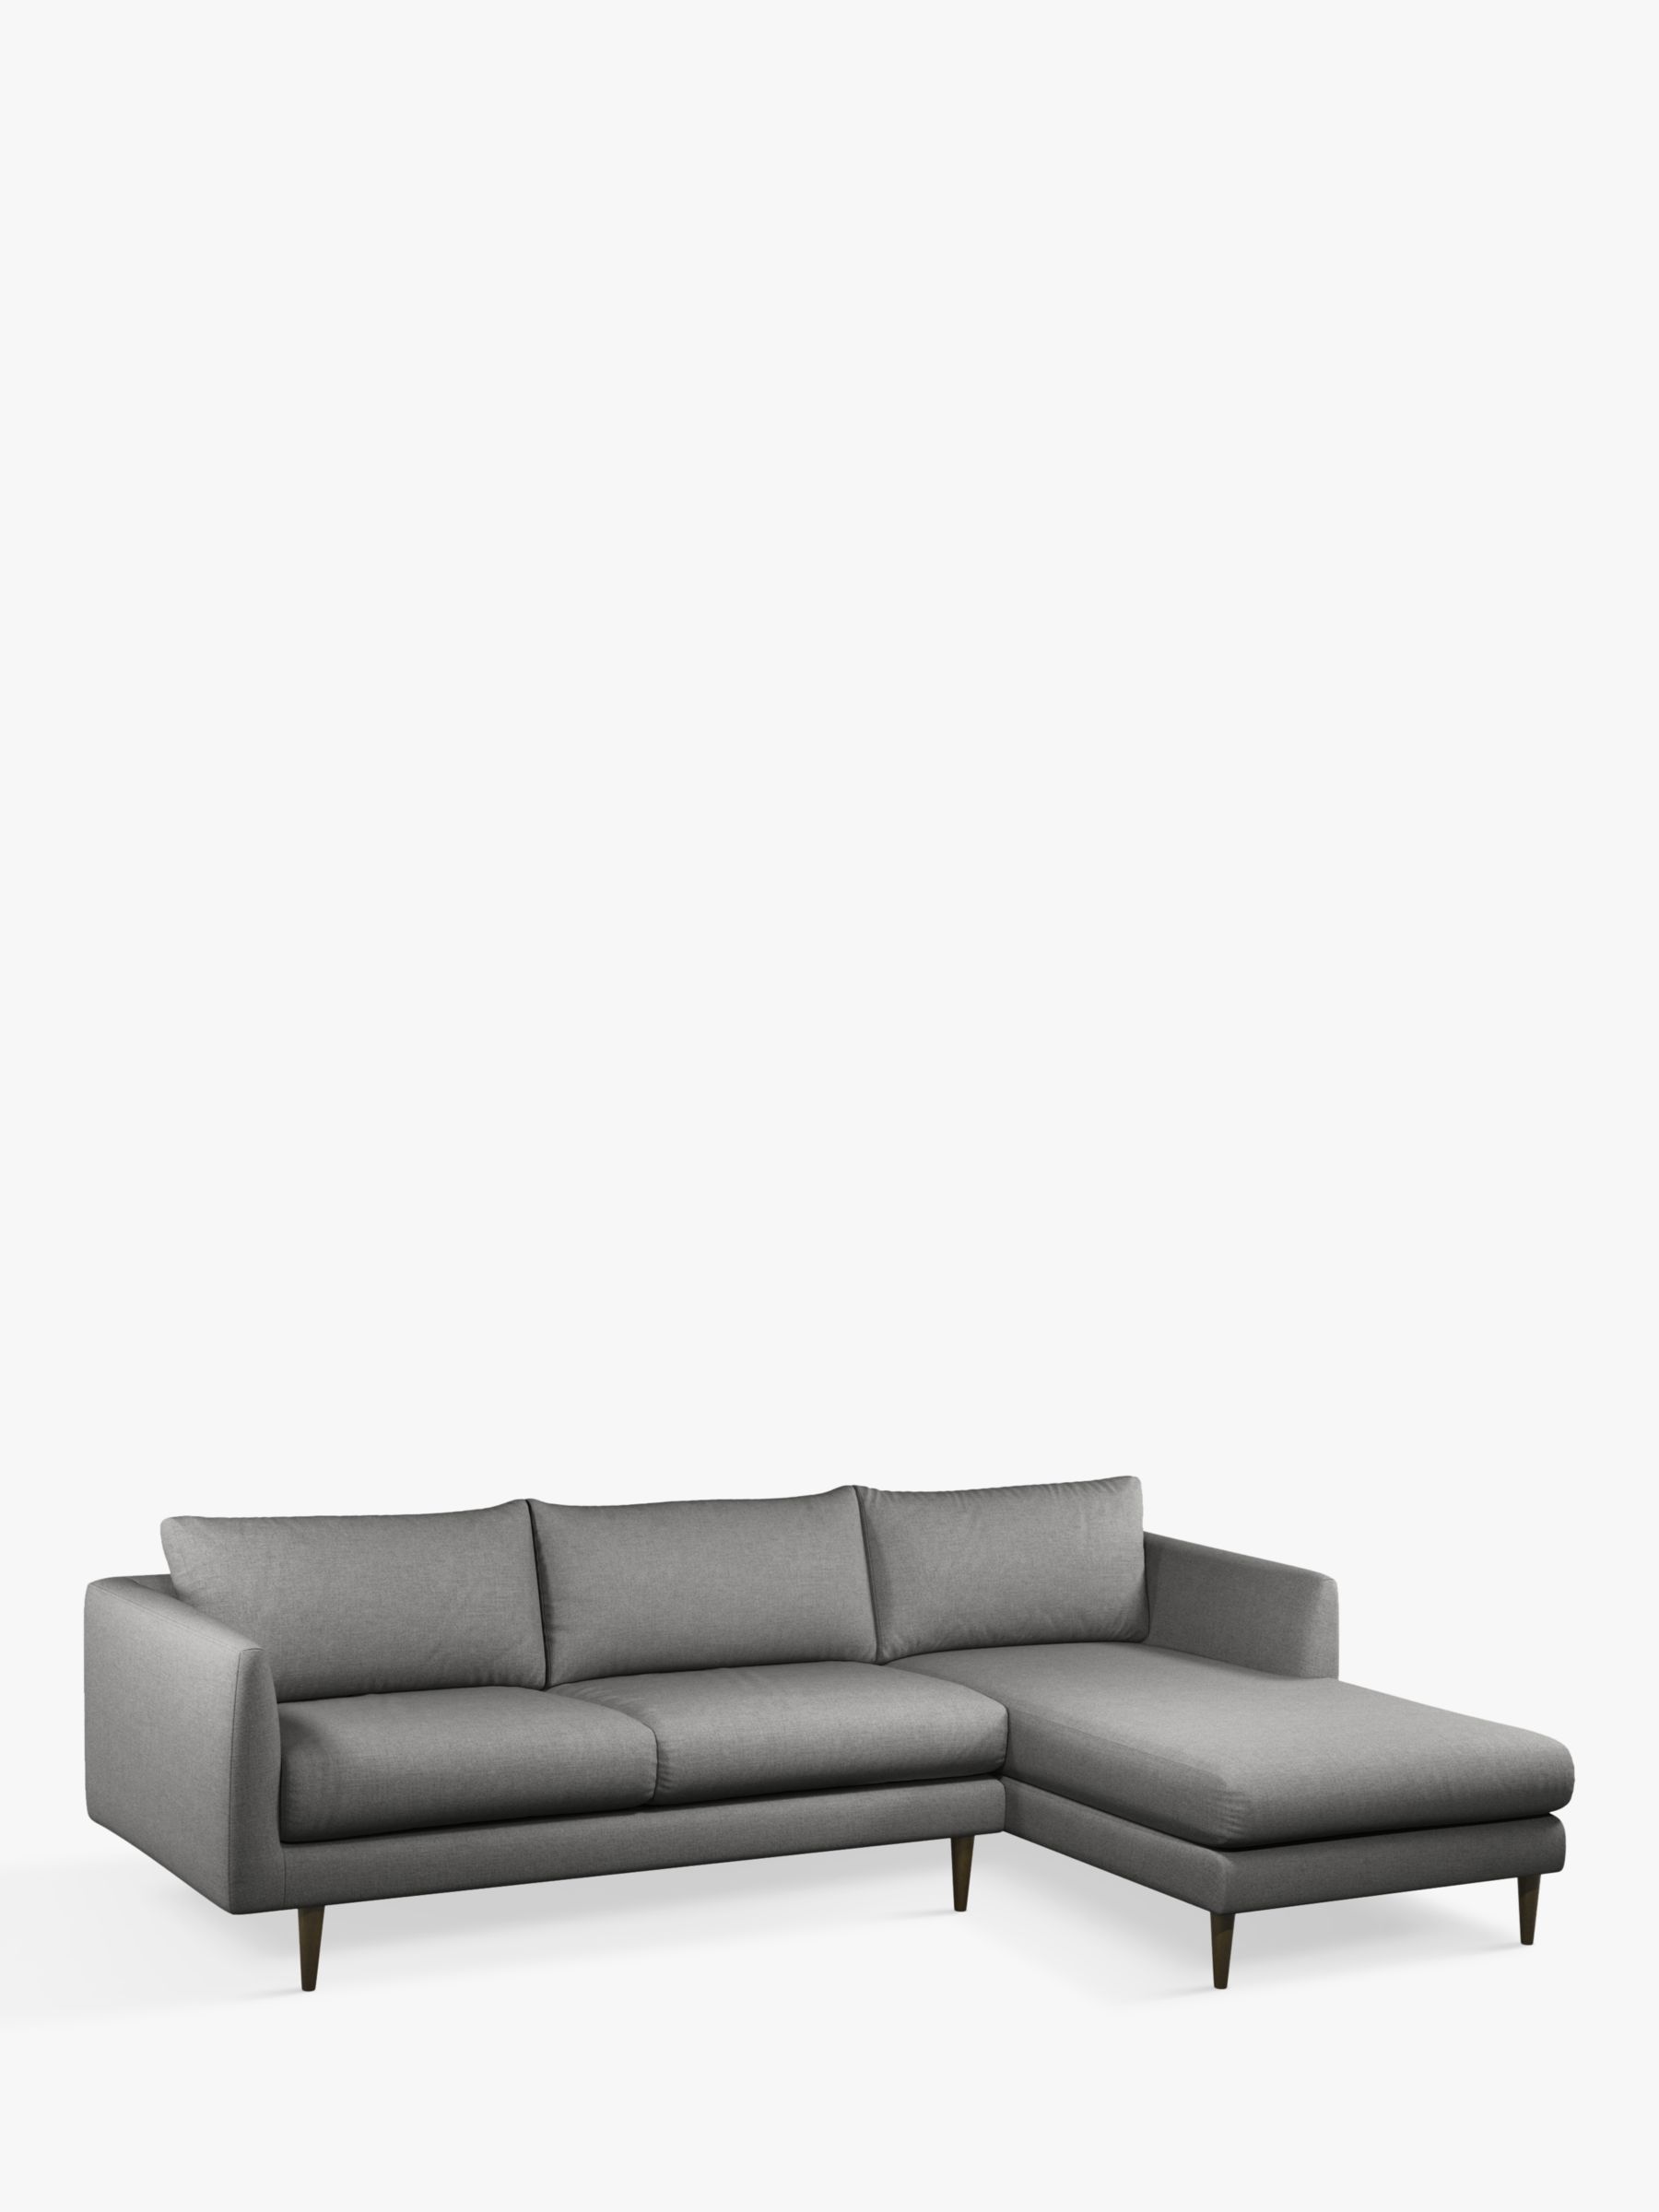 Latimer Range, John Lewis + Swoon Latimer Large 3 Seater RHF Chaise End Sofa, Dark Leg, Nickel Weave